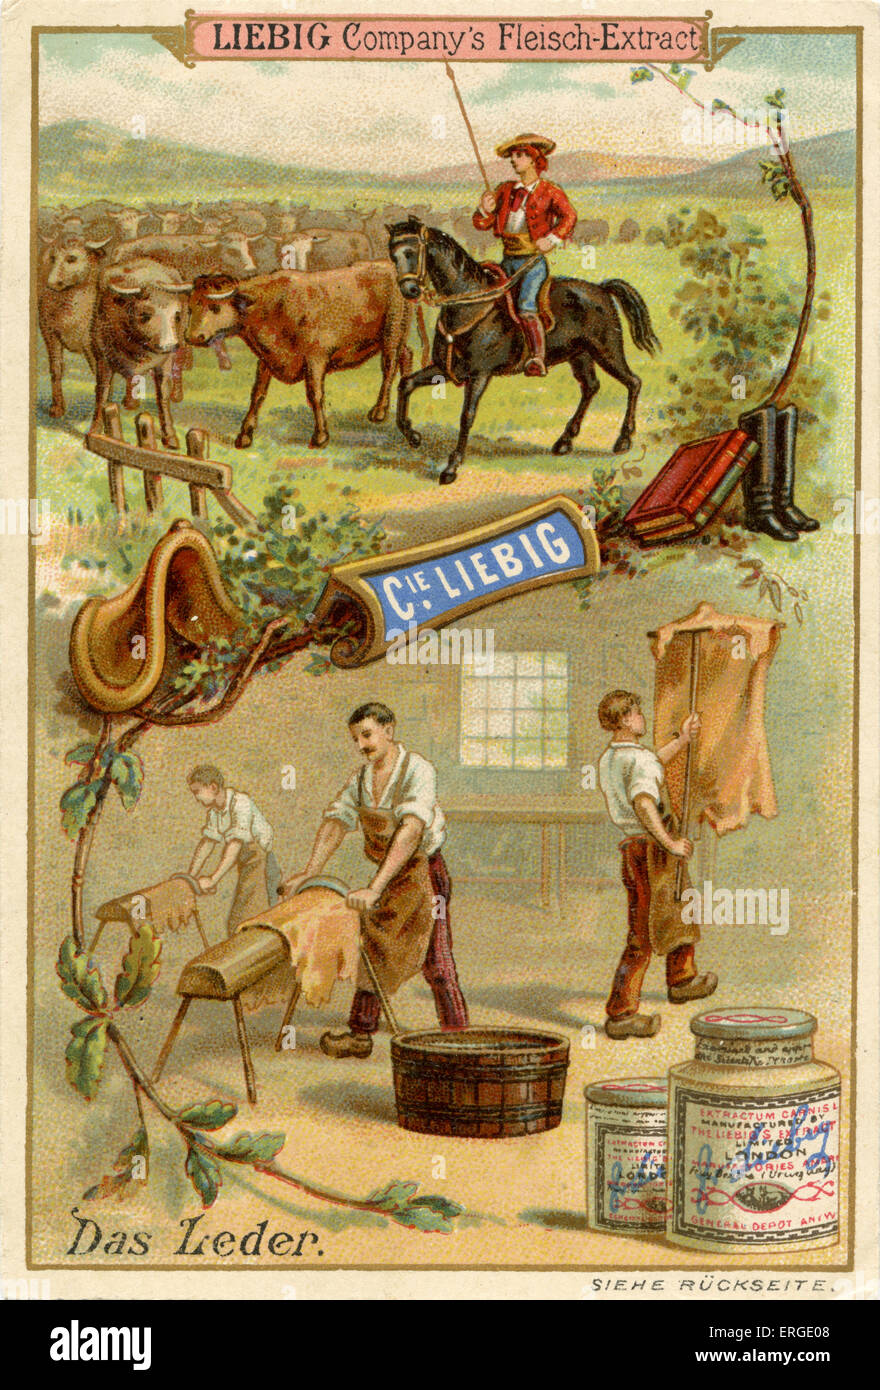 Cuero ('Dcomo Leder') - La Compañía Liebig cartas coleccionables, recursos naturales. Publicado 1892. Foto de stock